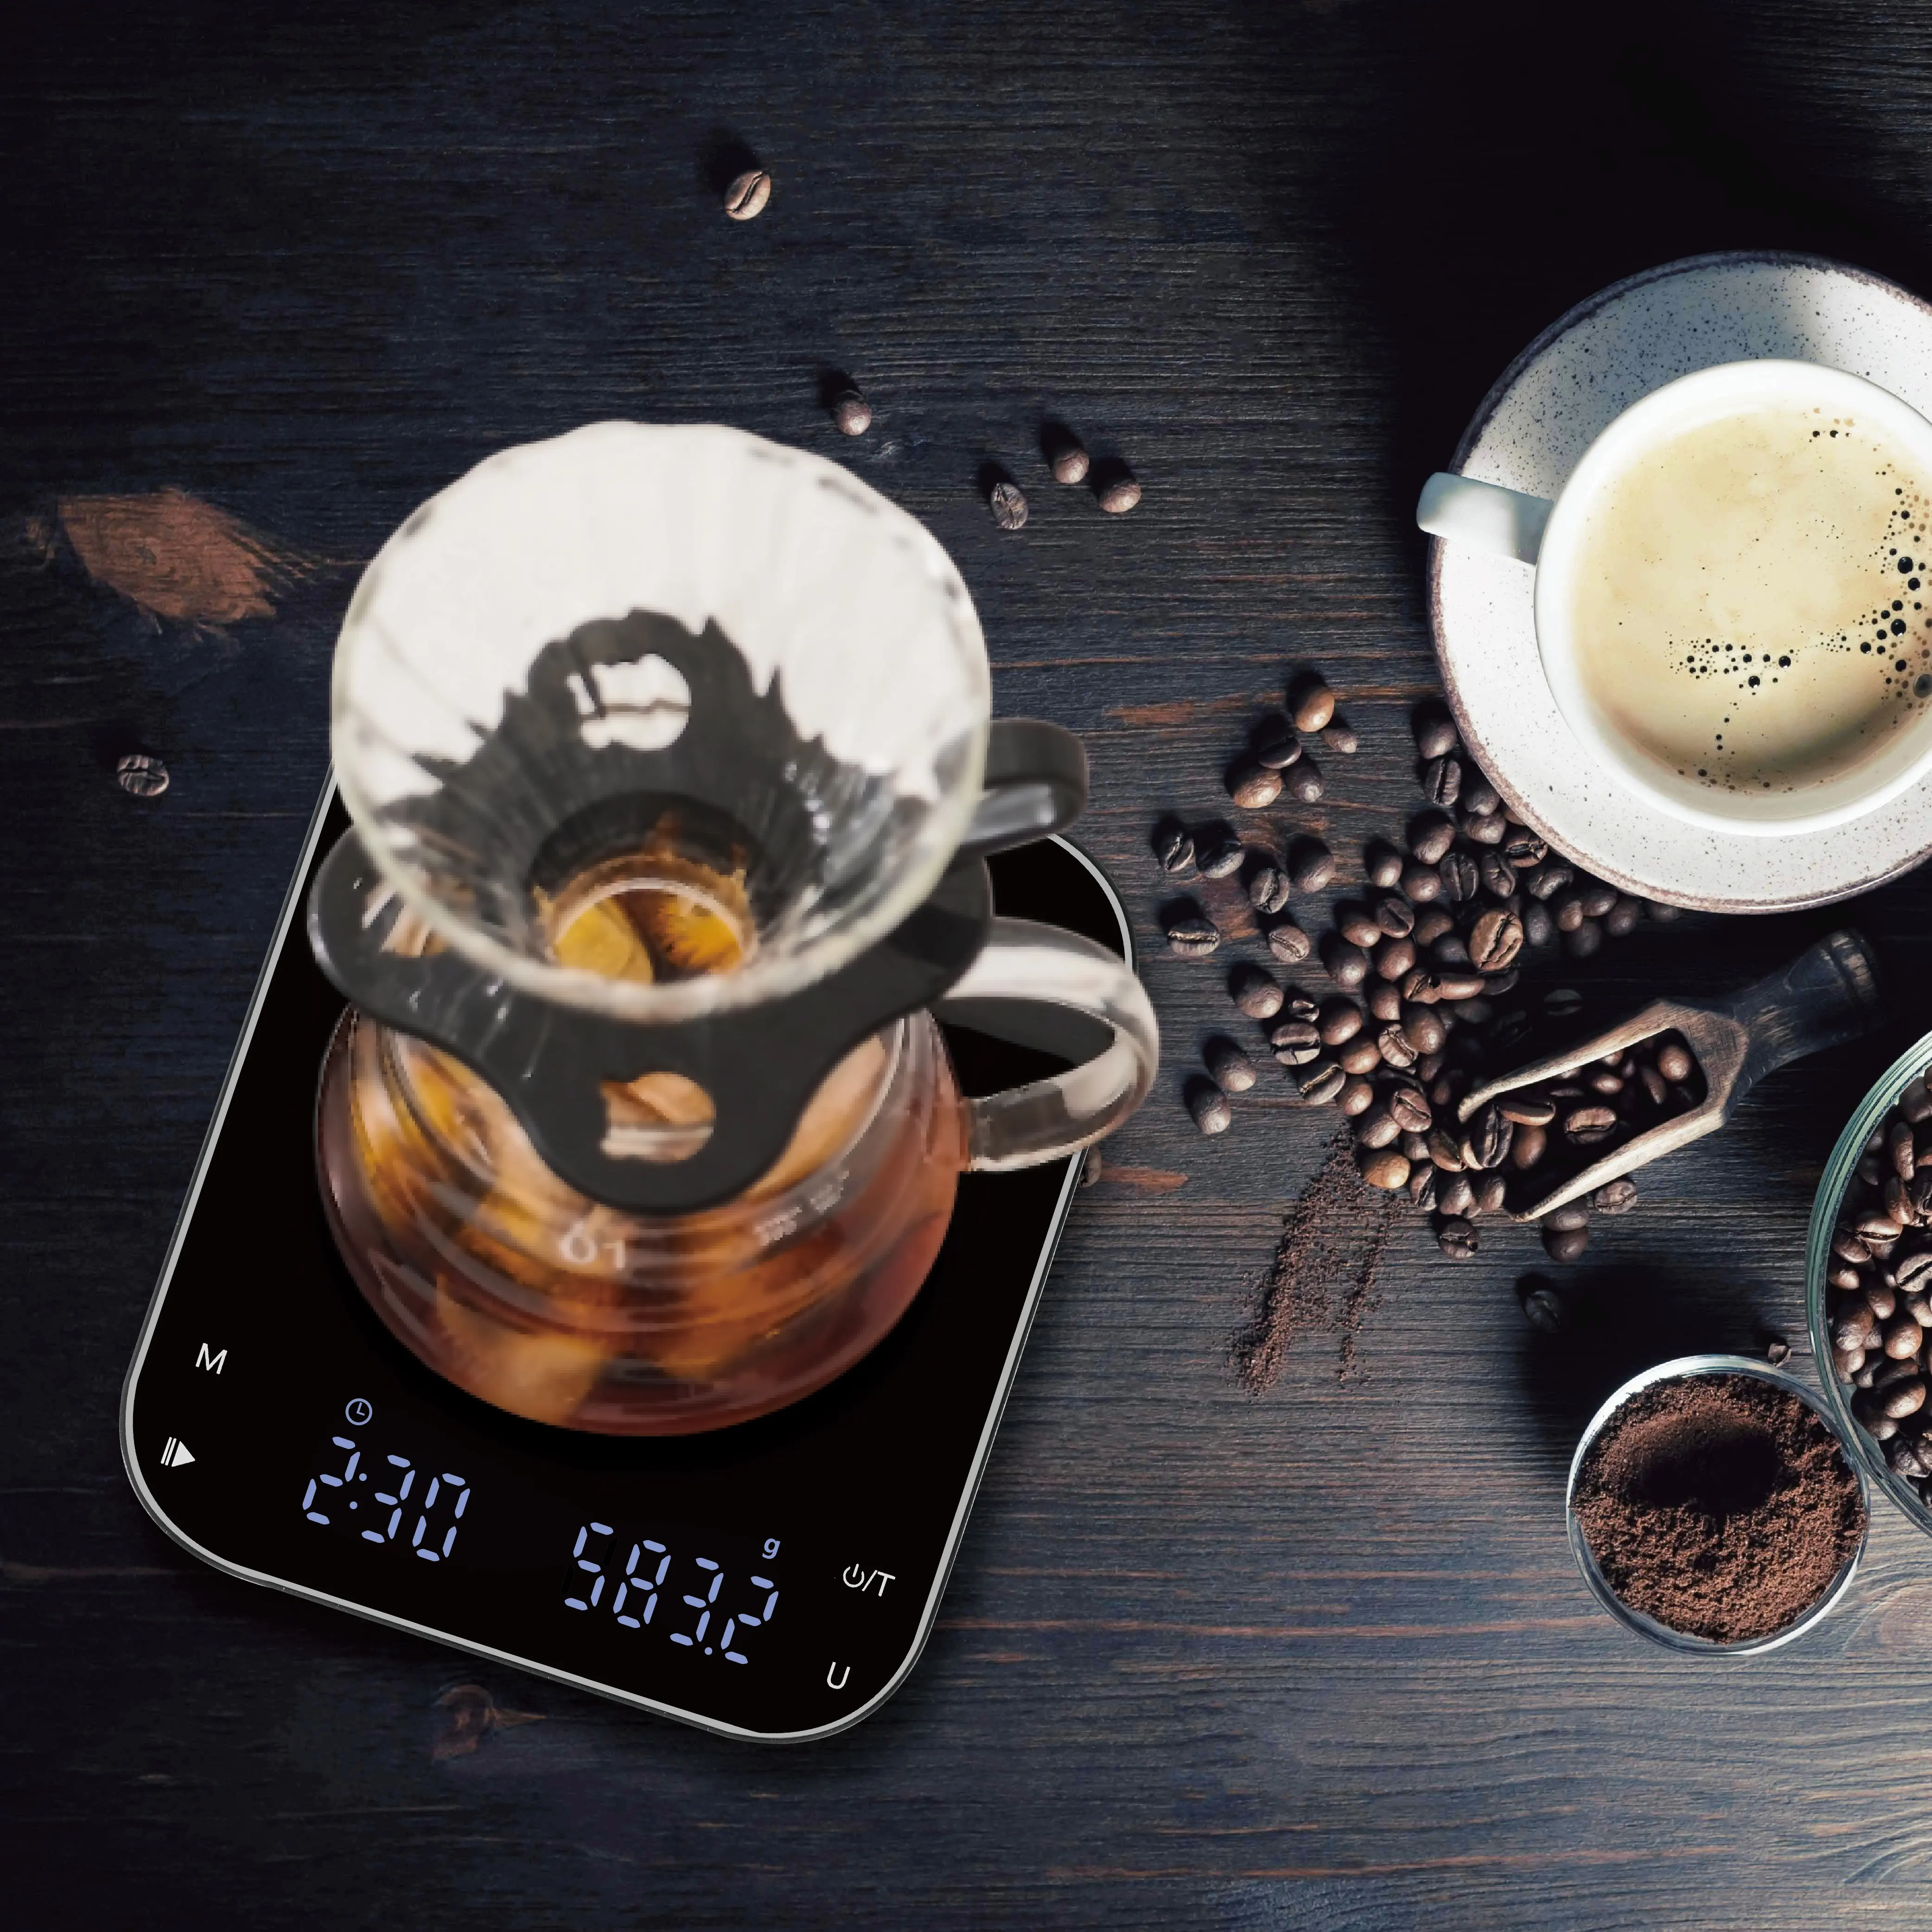 Yüksek hassas Led 3kg elektronik mutfak tartı ile denge Timemore dijital kahve ölçeği Espresso ölçeği zamanlayıcı